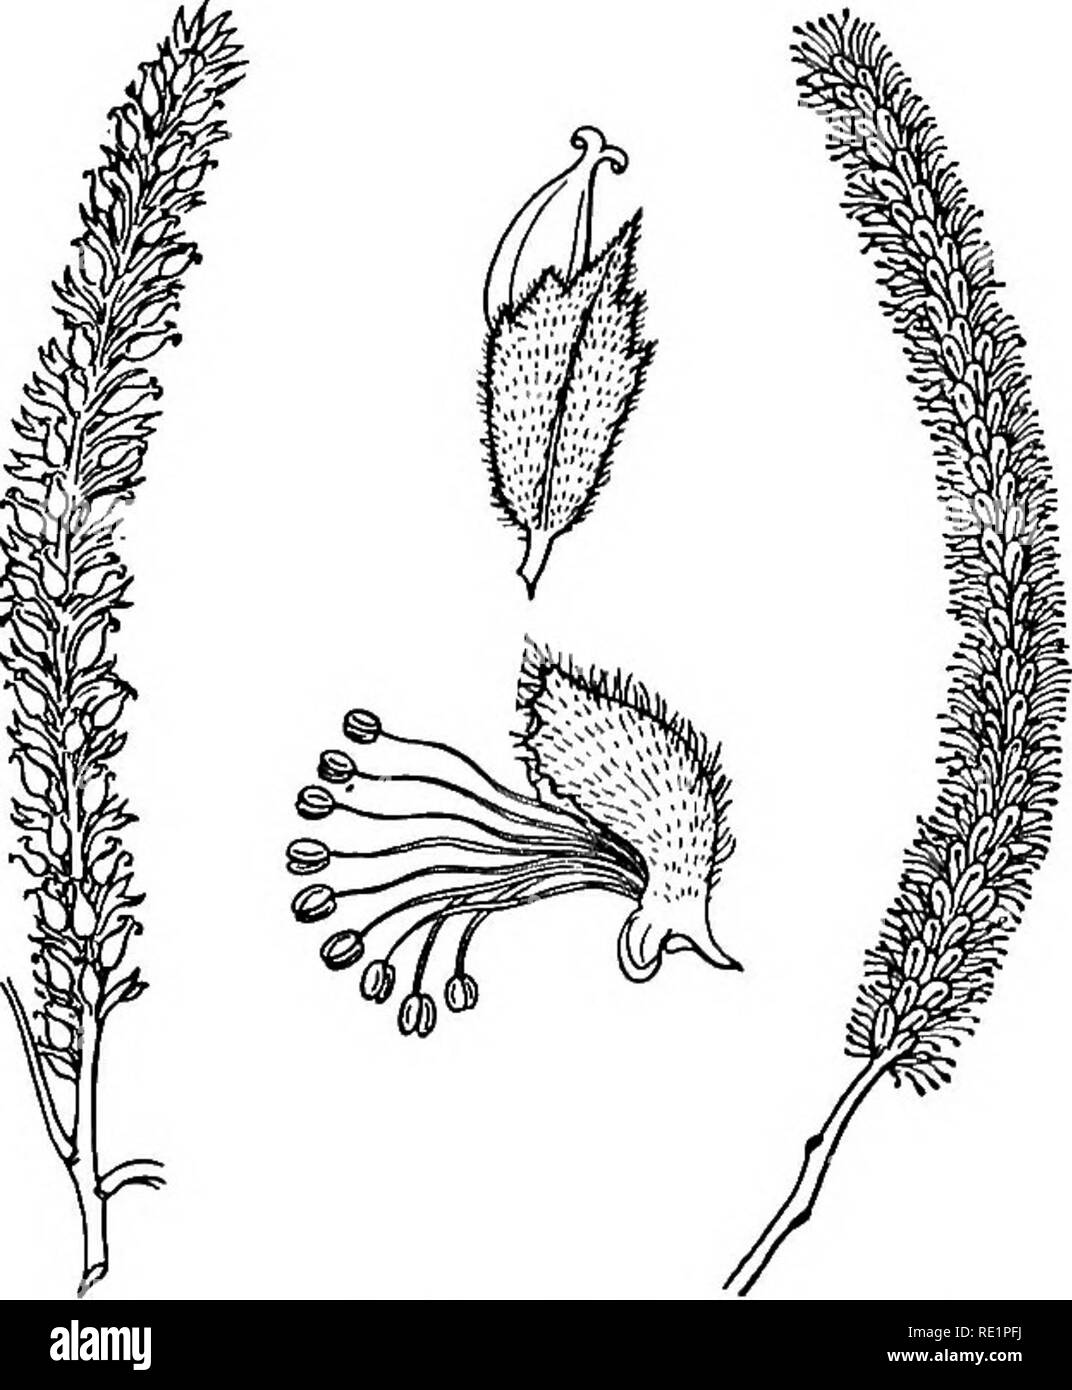 . Ein Handbuch der indischen Botanik. Botanik. 272 Klassifizierung connate Scale-Blätter an jedem der Gelenke oder Knoten, und der mit den Zweigen der Equisetums, daher der Name. Diese jhau ist eine ganz andere Pflanze aus dem Zwerg strauchigen jhau (Taviarix) von Sand - Banken. Nat. O.- Sahcacece umfasst die Willow {Salix), Pappel {Populus) von Europa. Salix tetra-Sperma (Abb. 242) ist ein kleiner Baum mit hier und da. Nat. Um 11. - Santalacece in chandan oder Sandelholz (Santalum Album), der eine root-Parasit, saugen seine Nahrung aus den Wurzeln seiner Gastgeber, wenn auch nicht ausschließlich, so doch teilweise Abhängigkeit Stockfoto